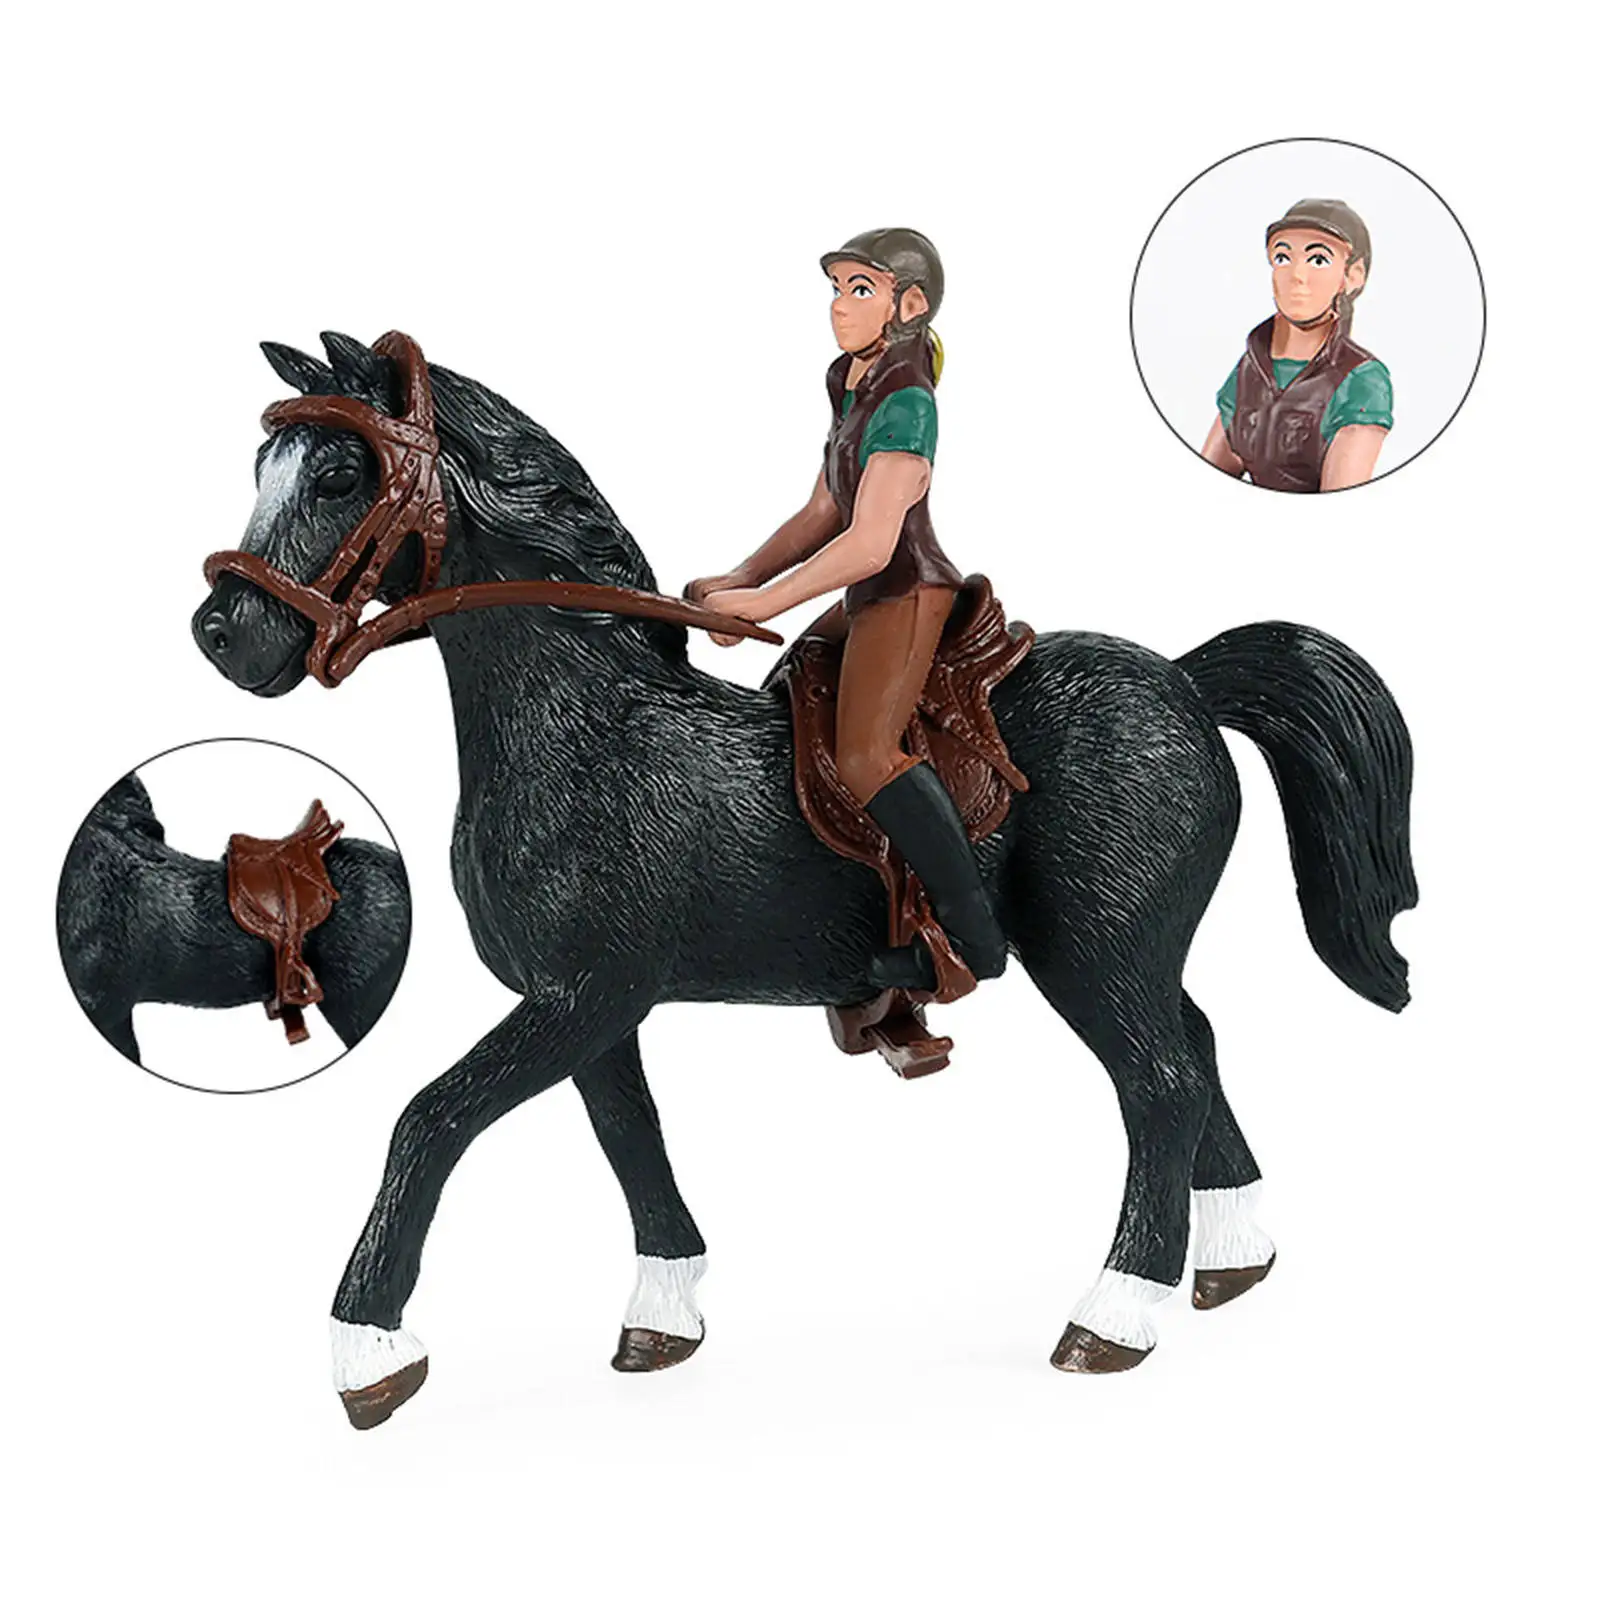 

Коллекционная фигурка лошади с гонщиком, фигурка животного для малышей